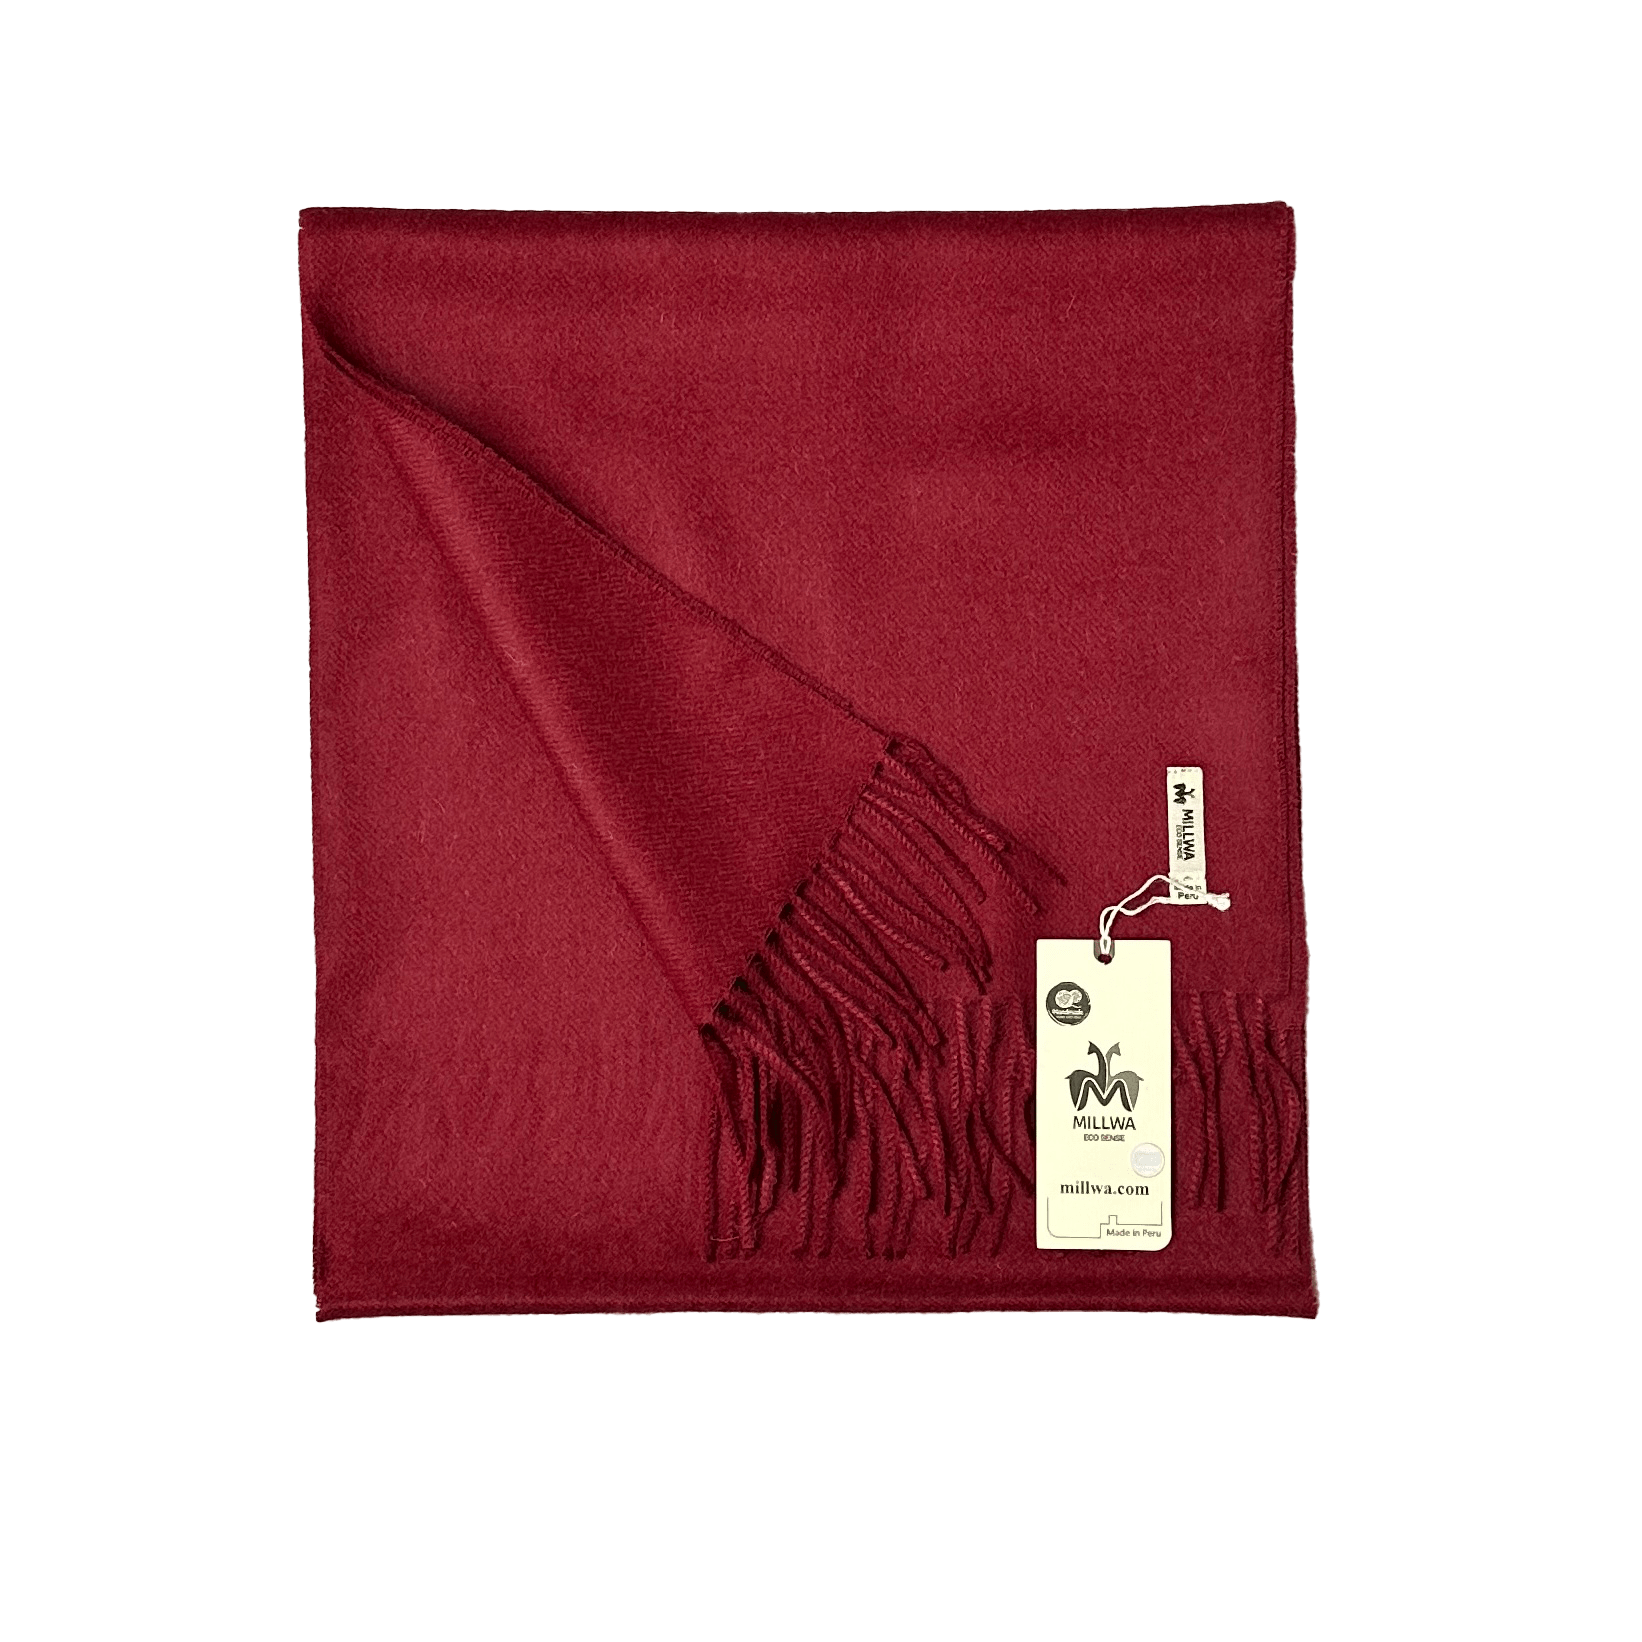 Halstørklæde i 100% baby alpaca uld - Vinrød (30 x 180 cm) Tørklæder og sjaler Uldplaiden